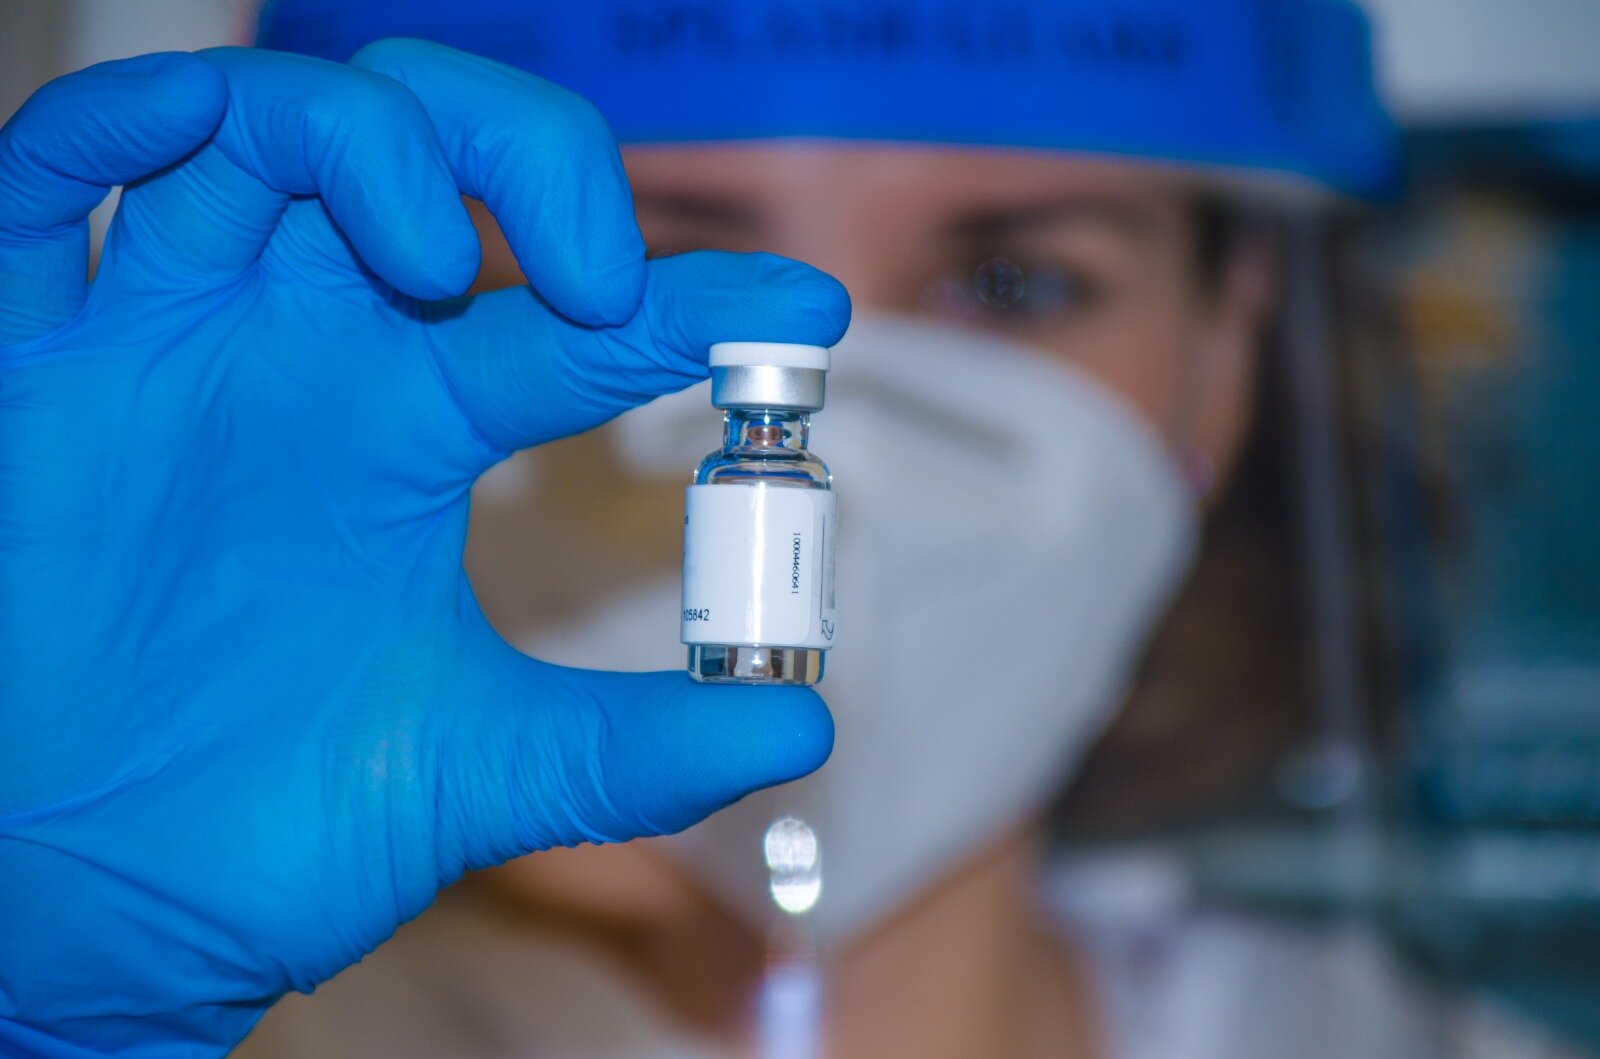 La Comunitat Valenciana supera els 3 milions de PCR des de l'inici de la pandèmia